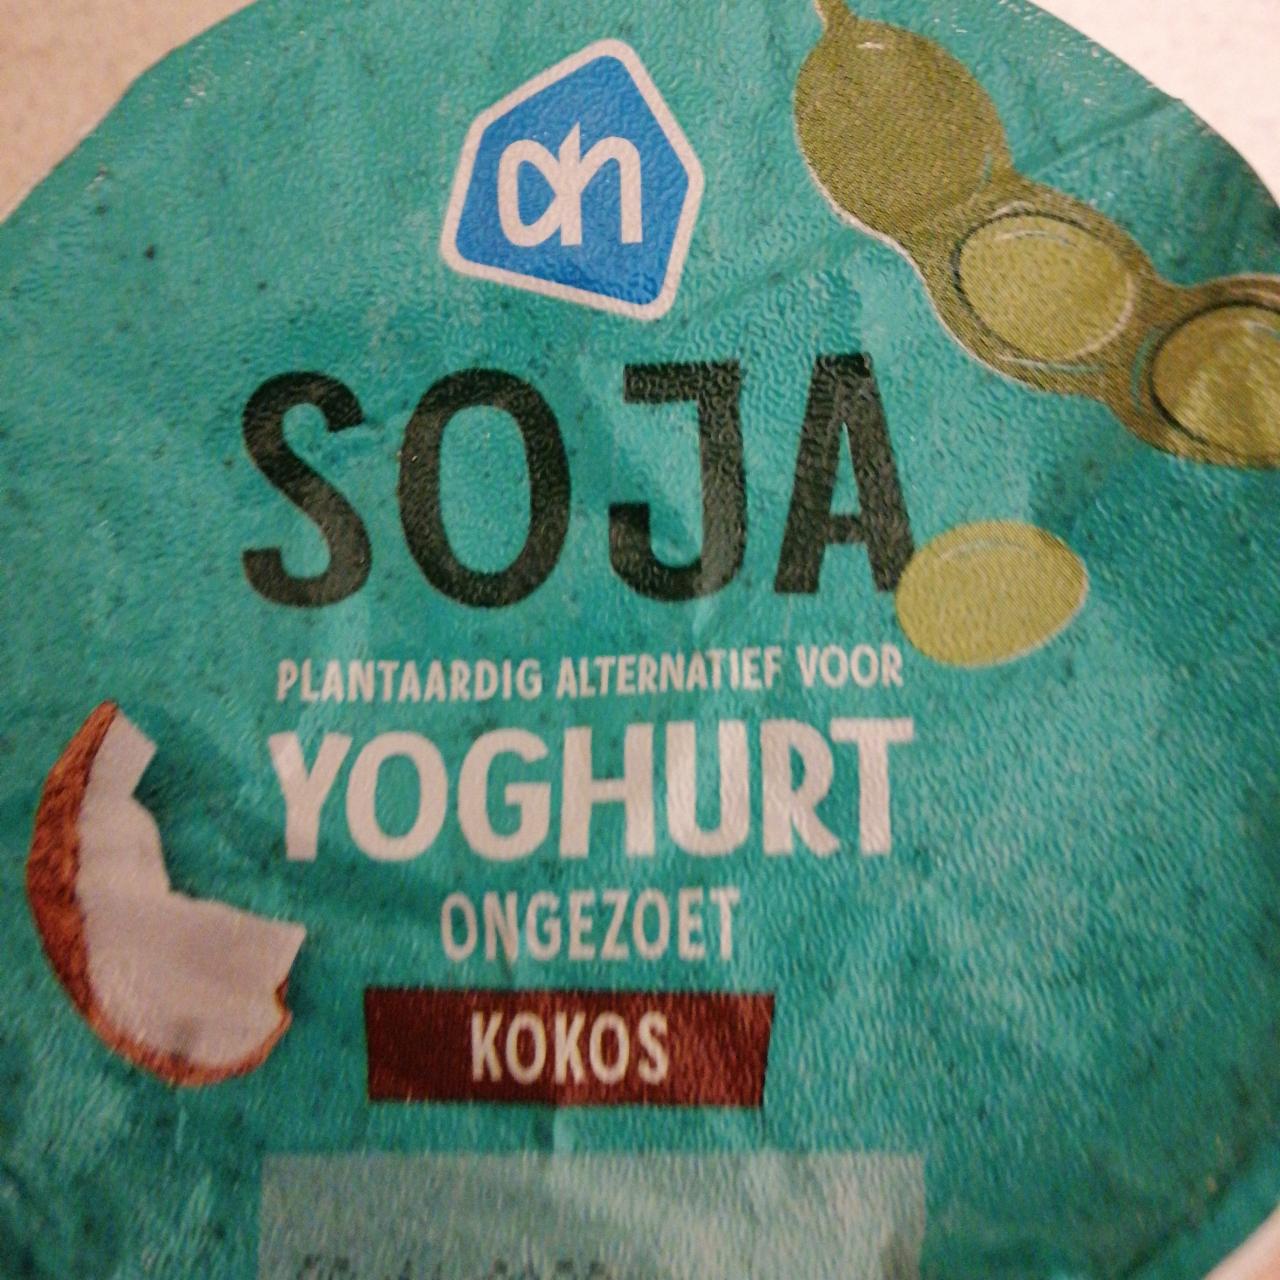 Фото - Soja plantaardig alternatief voor Yoghurt kokos Albert Heijn